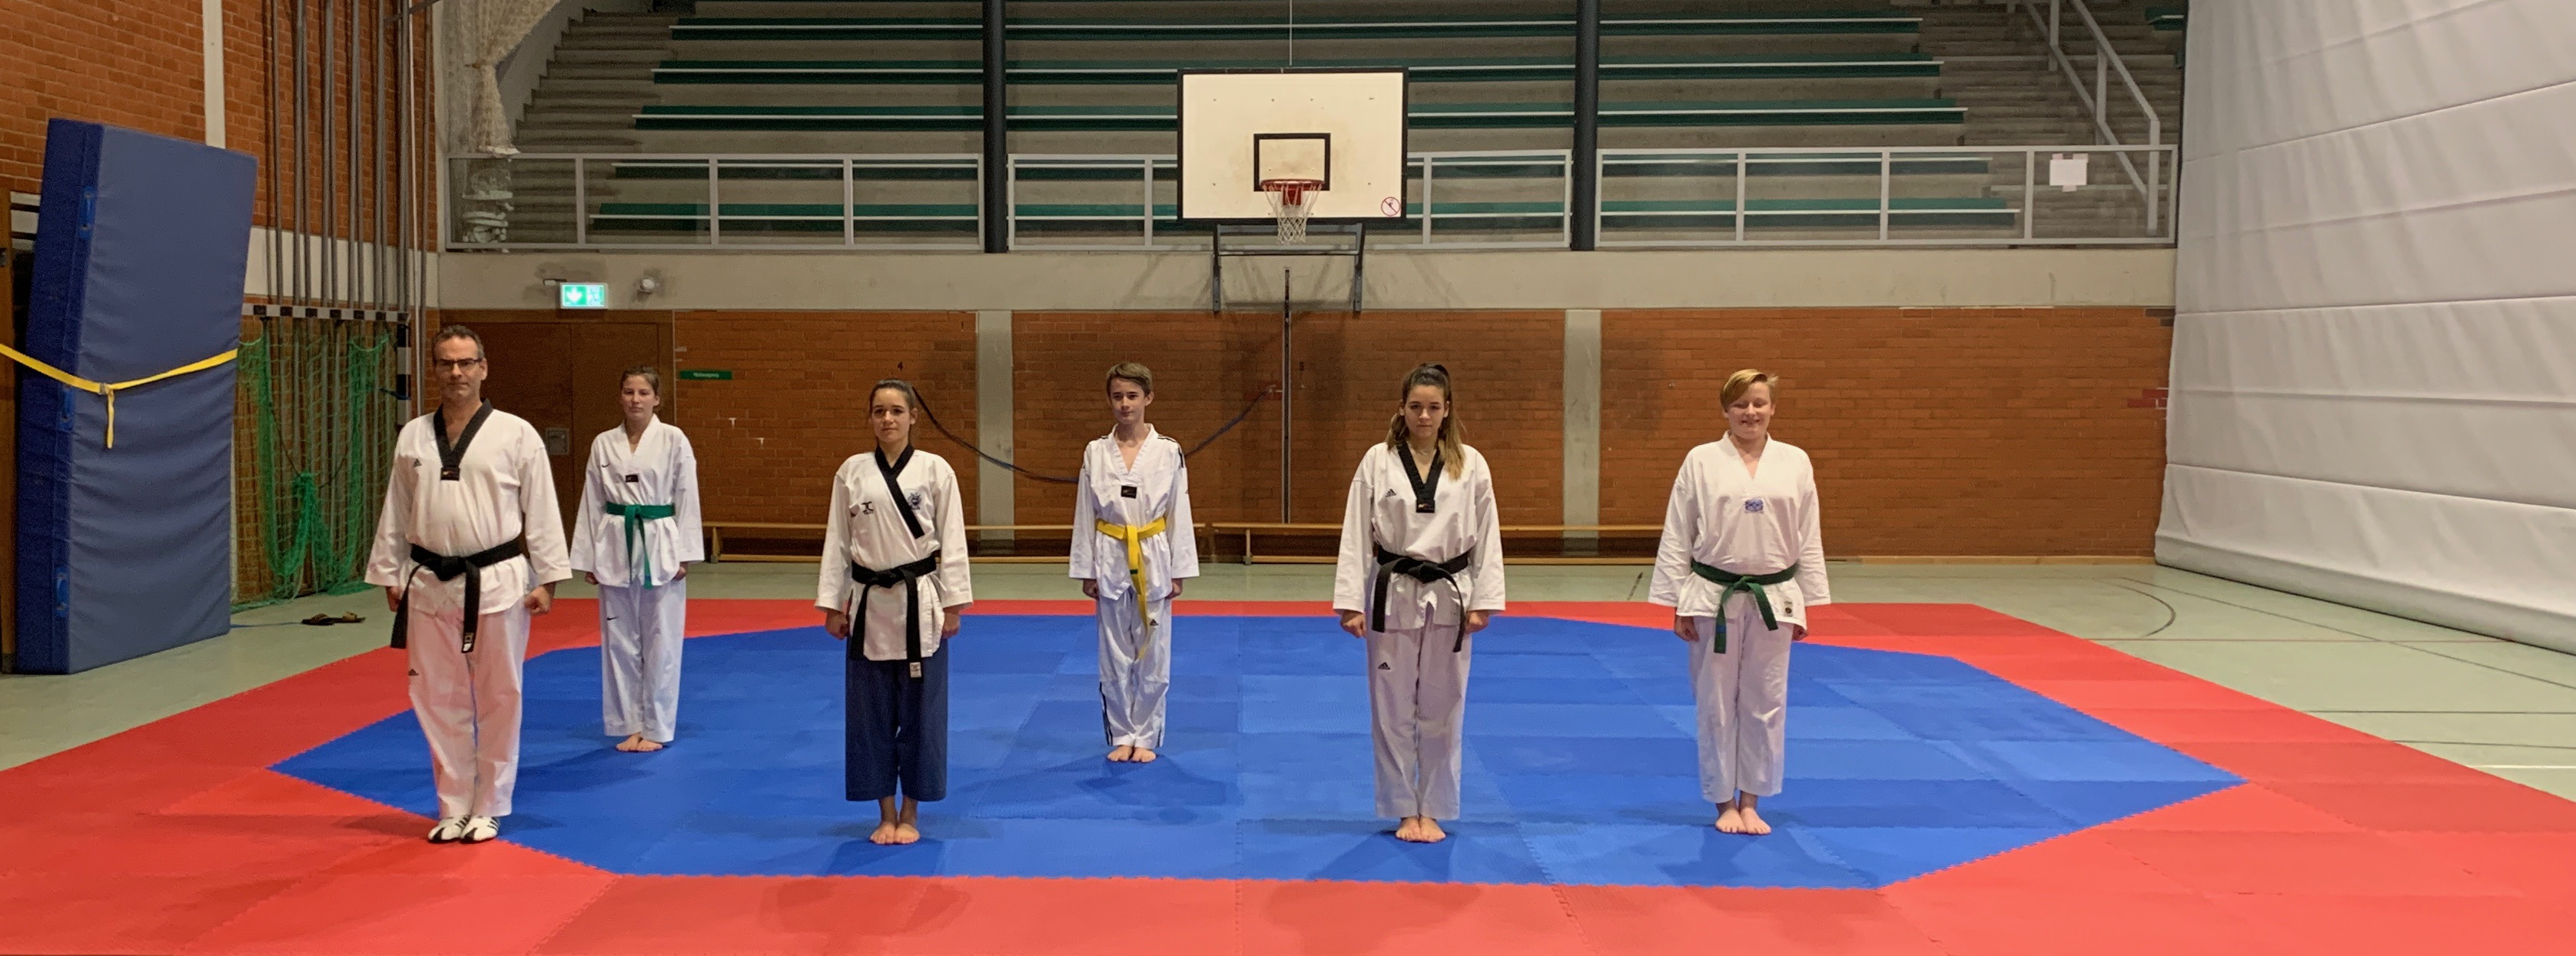 Taekwondo: Unser neuer Trainingsboden ist endlich da!